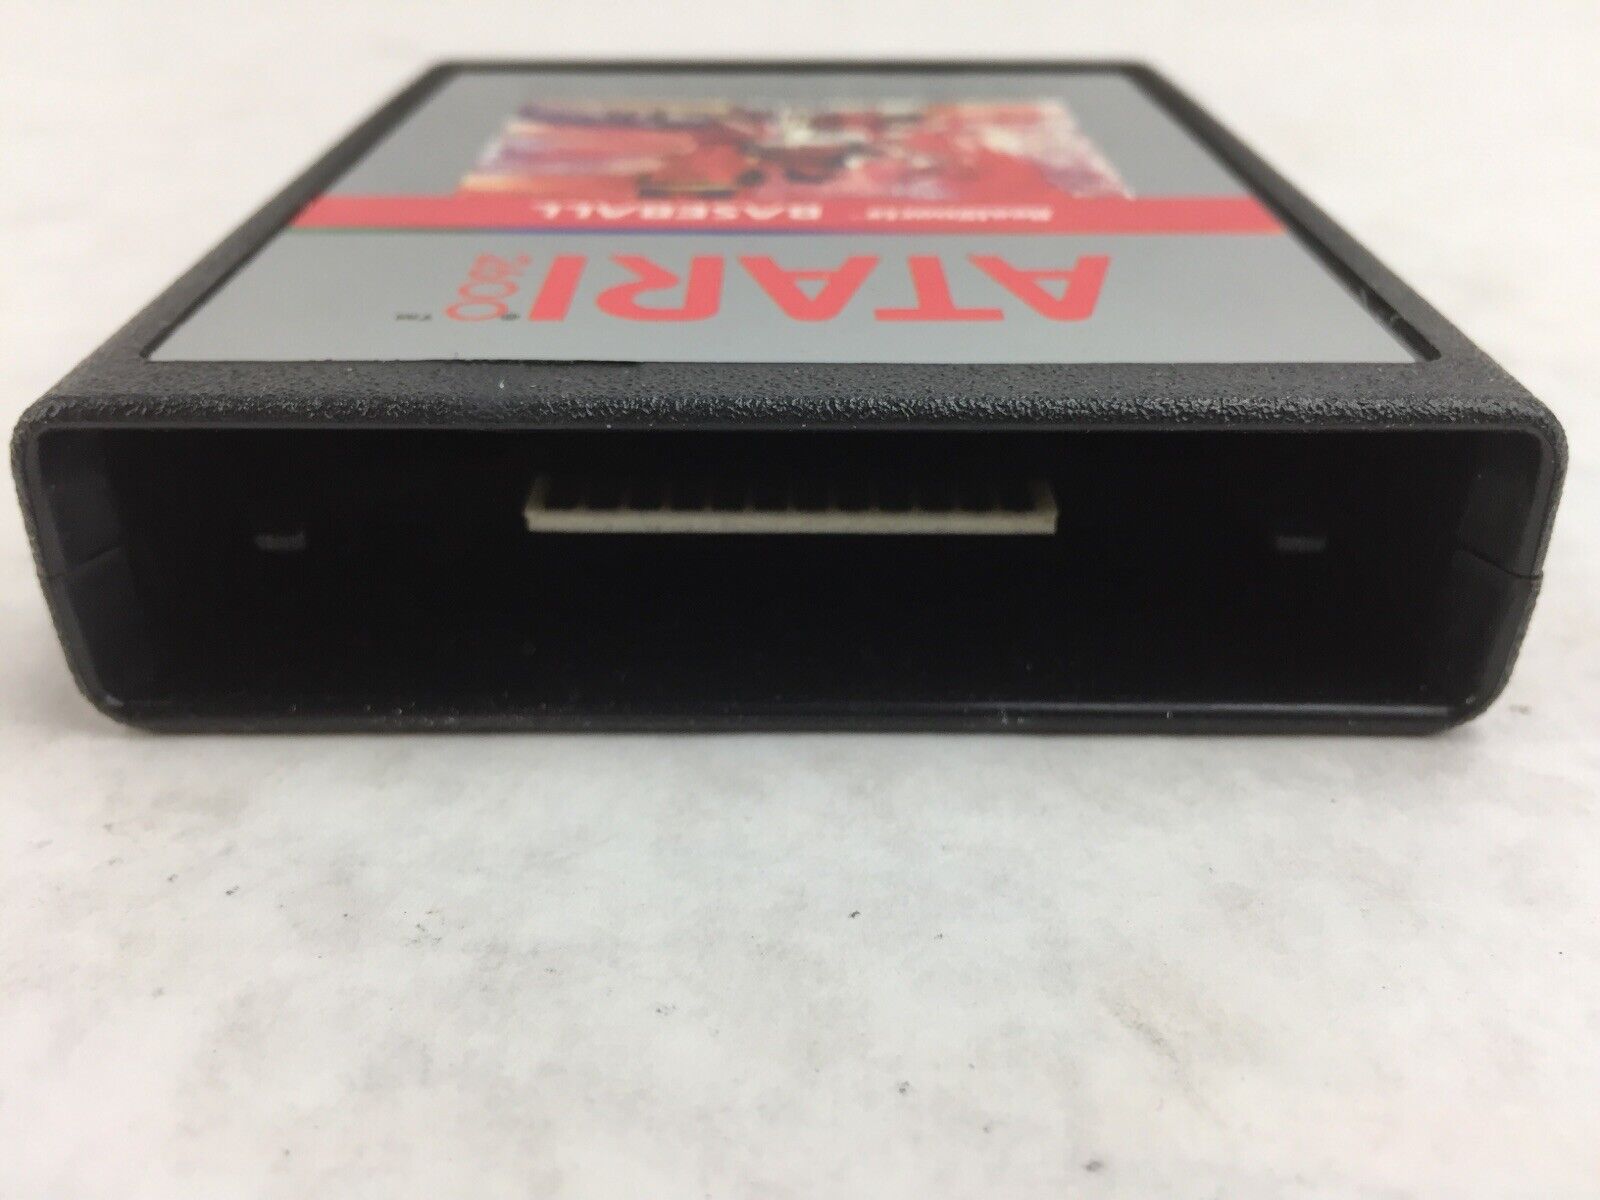 Atari 2600 PETE ROSE BASEBALL Video Game in Box